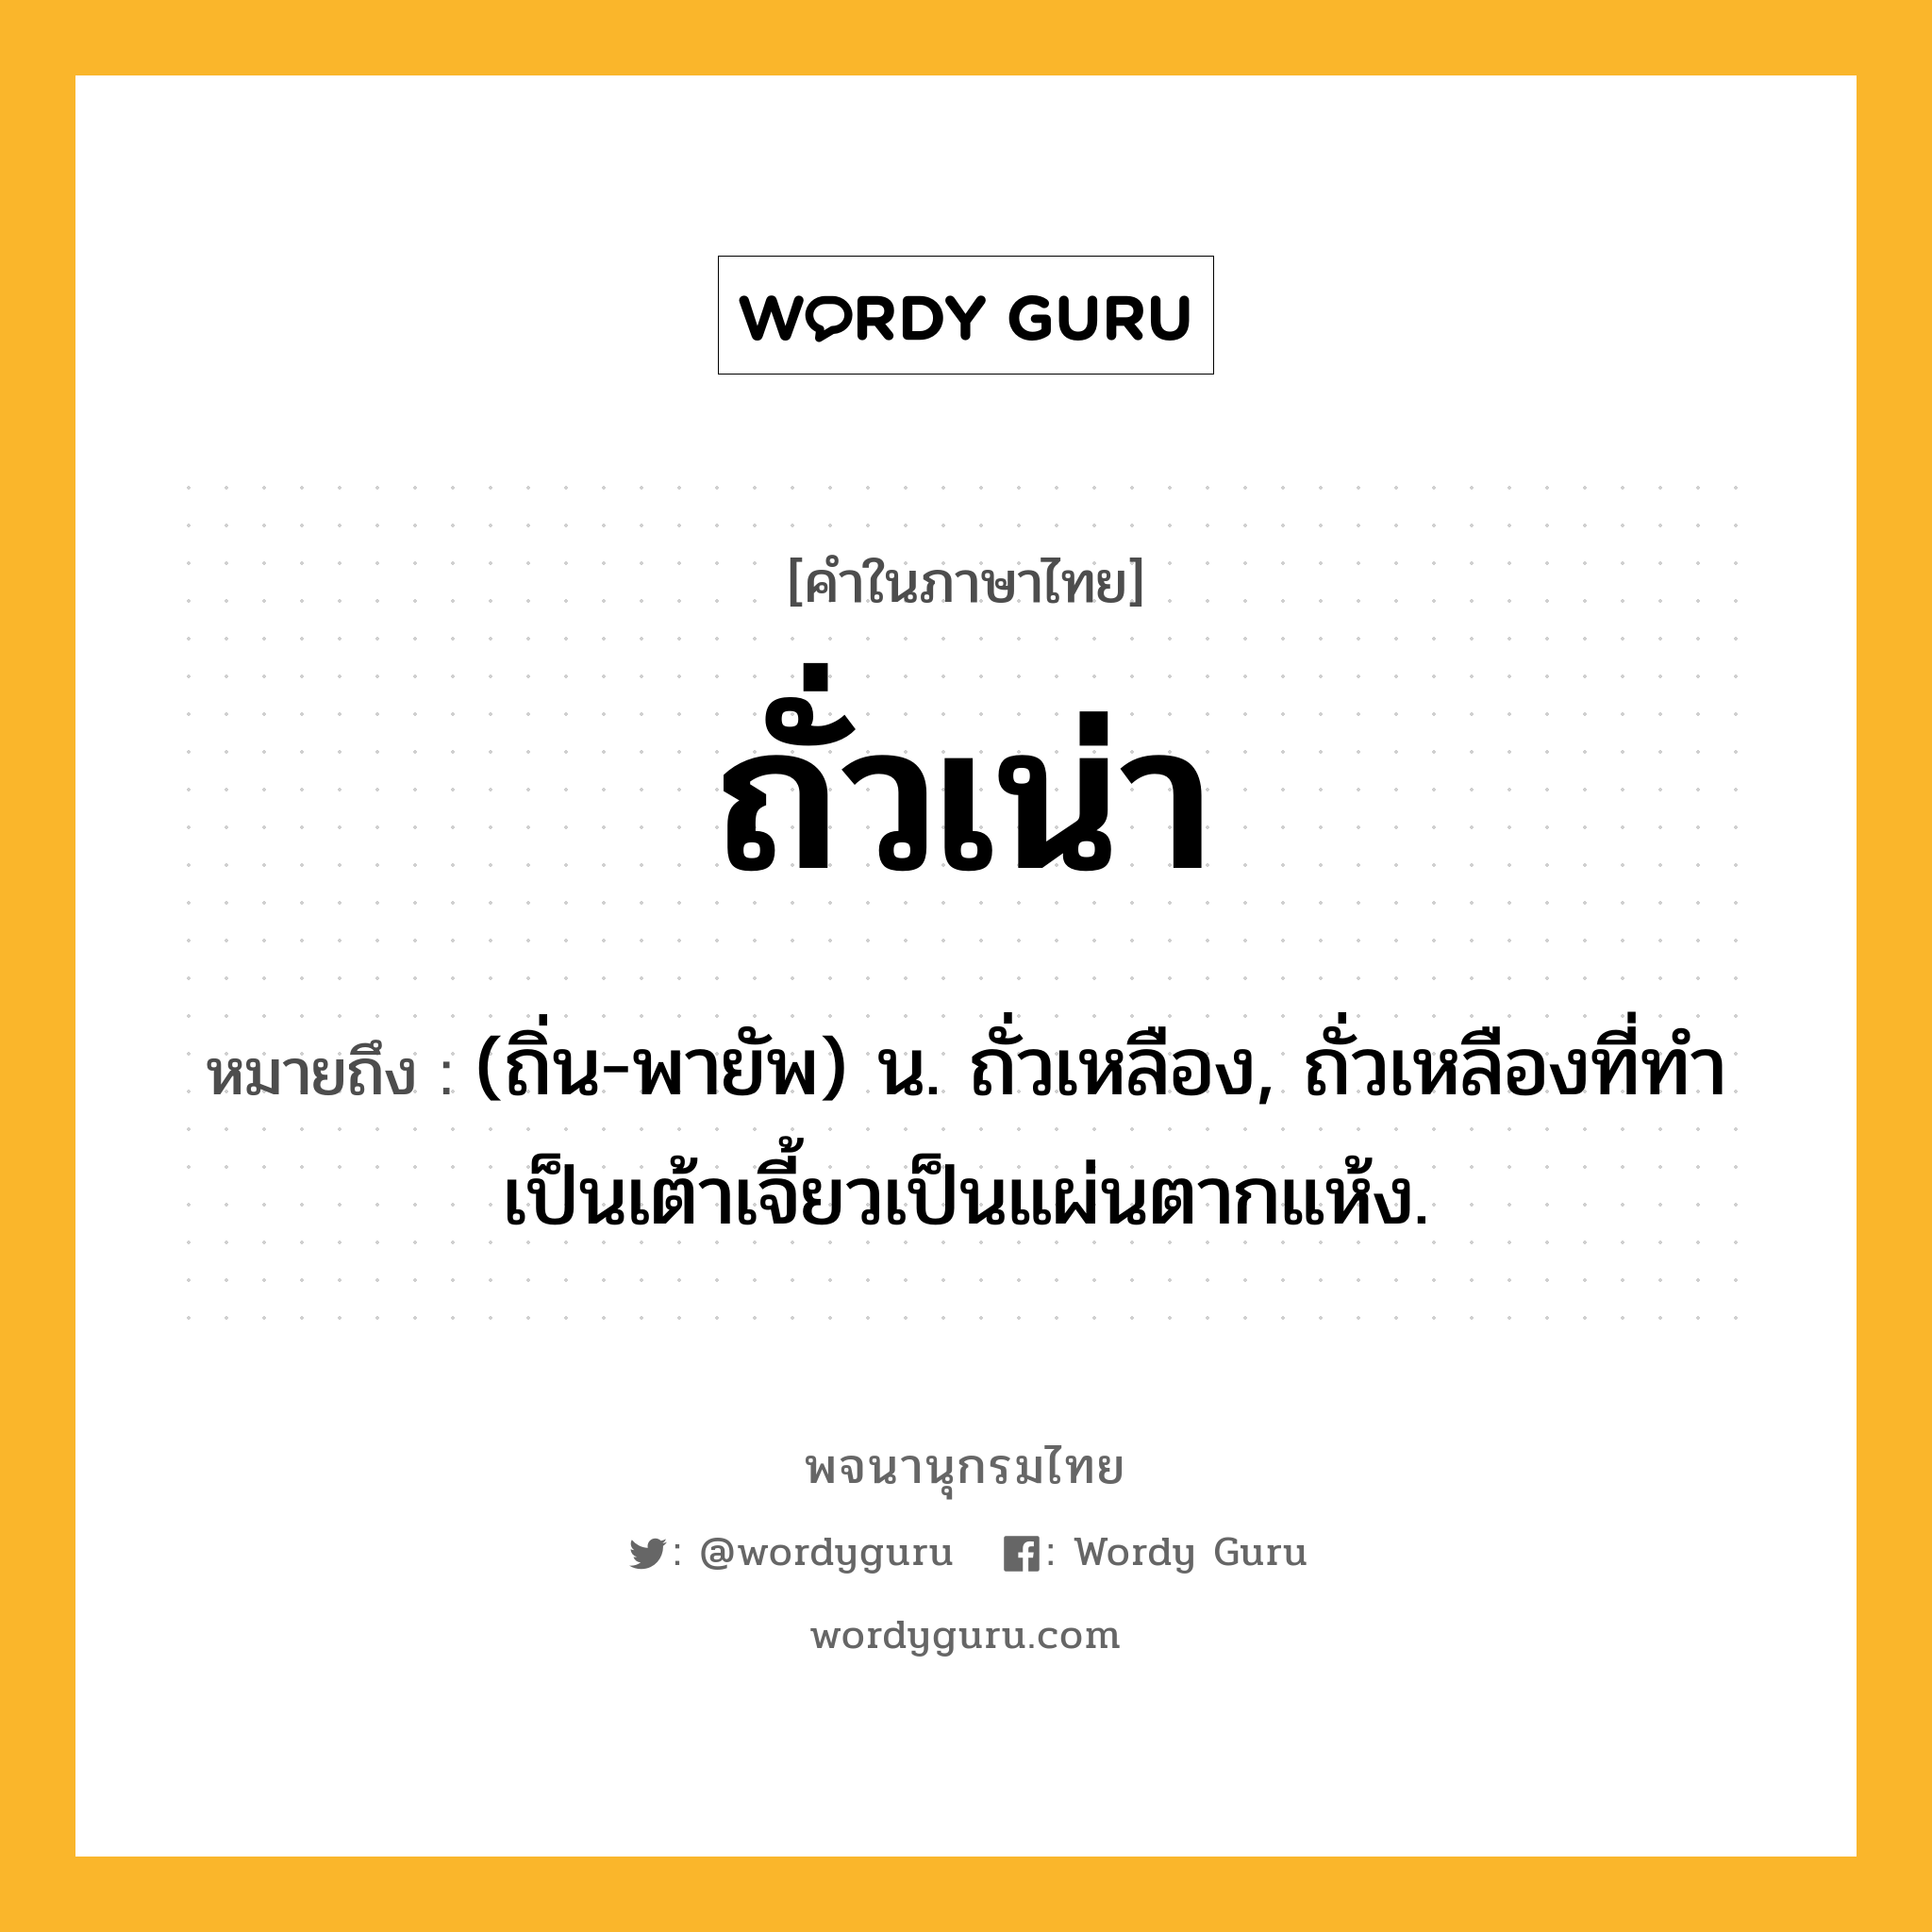 ถั่วเน่า ความหมาย หมายถึงอะไร?, คำในภาษาไทย ถั่วเน่า หมายถึง (ถิ่น-พายัพ) น. ถั่วเหลือง, ถั่วเหลืองที่ทำเป็นเต้าเจี้ยวเป็นแผ่นตากแห้ง.